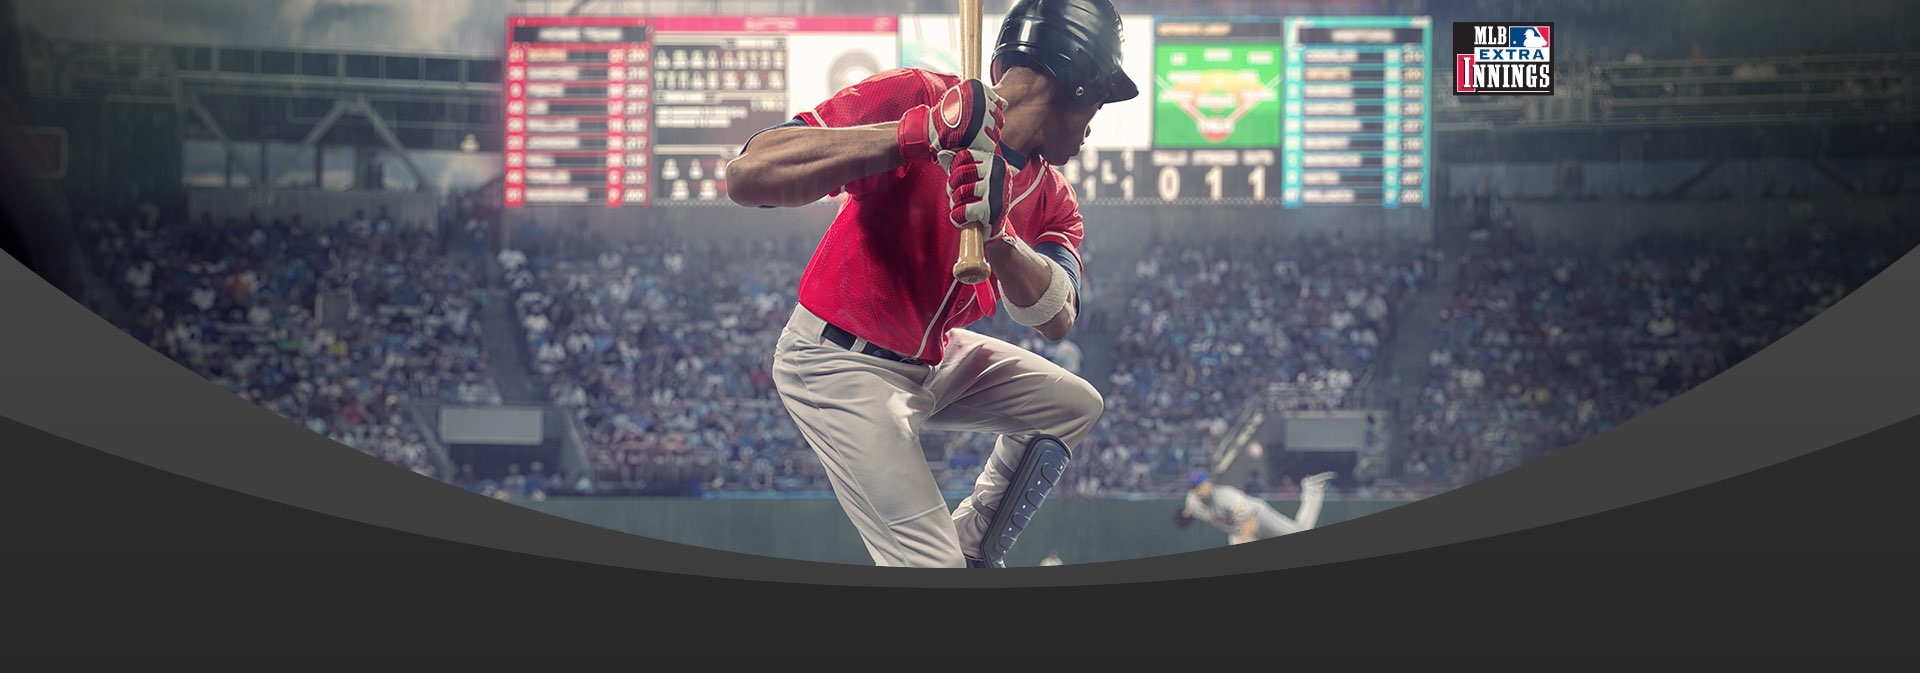 MLB Extra Innings El mejor béisbol de la MLB DIRECTV Perú